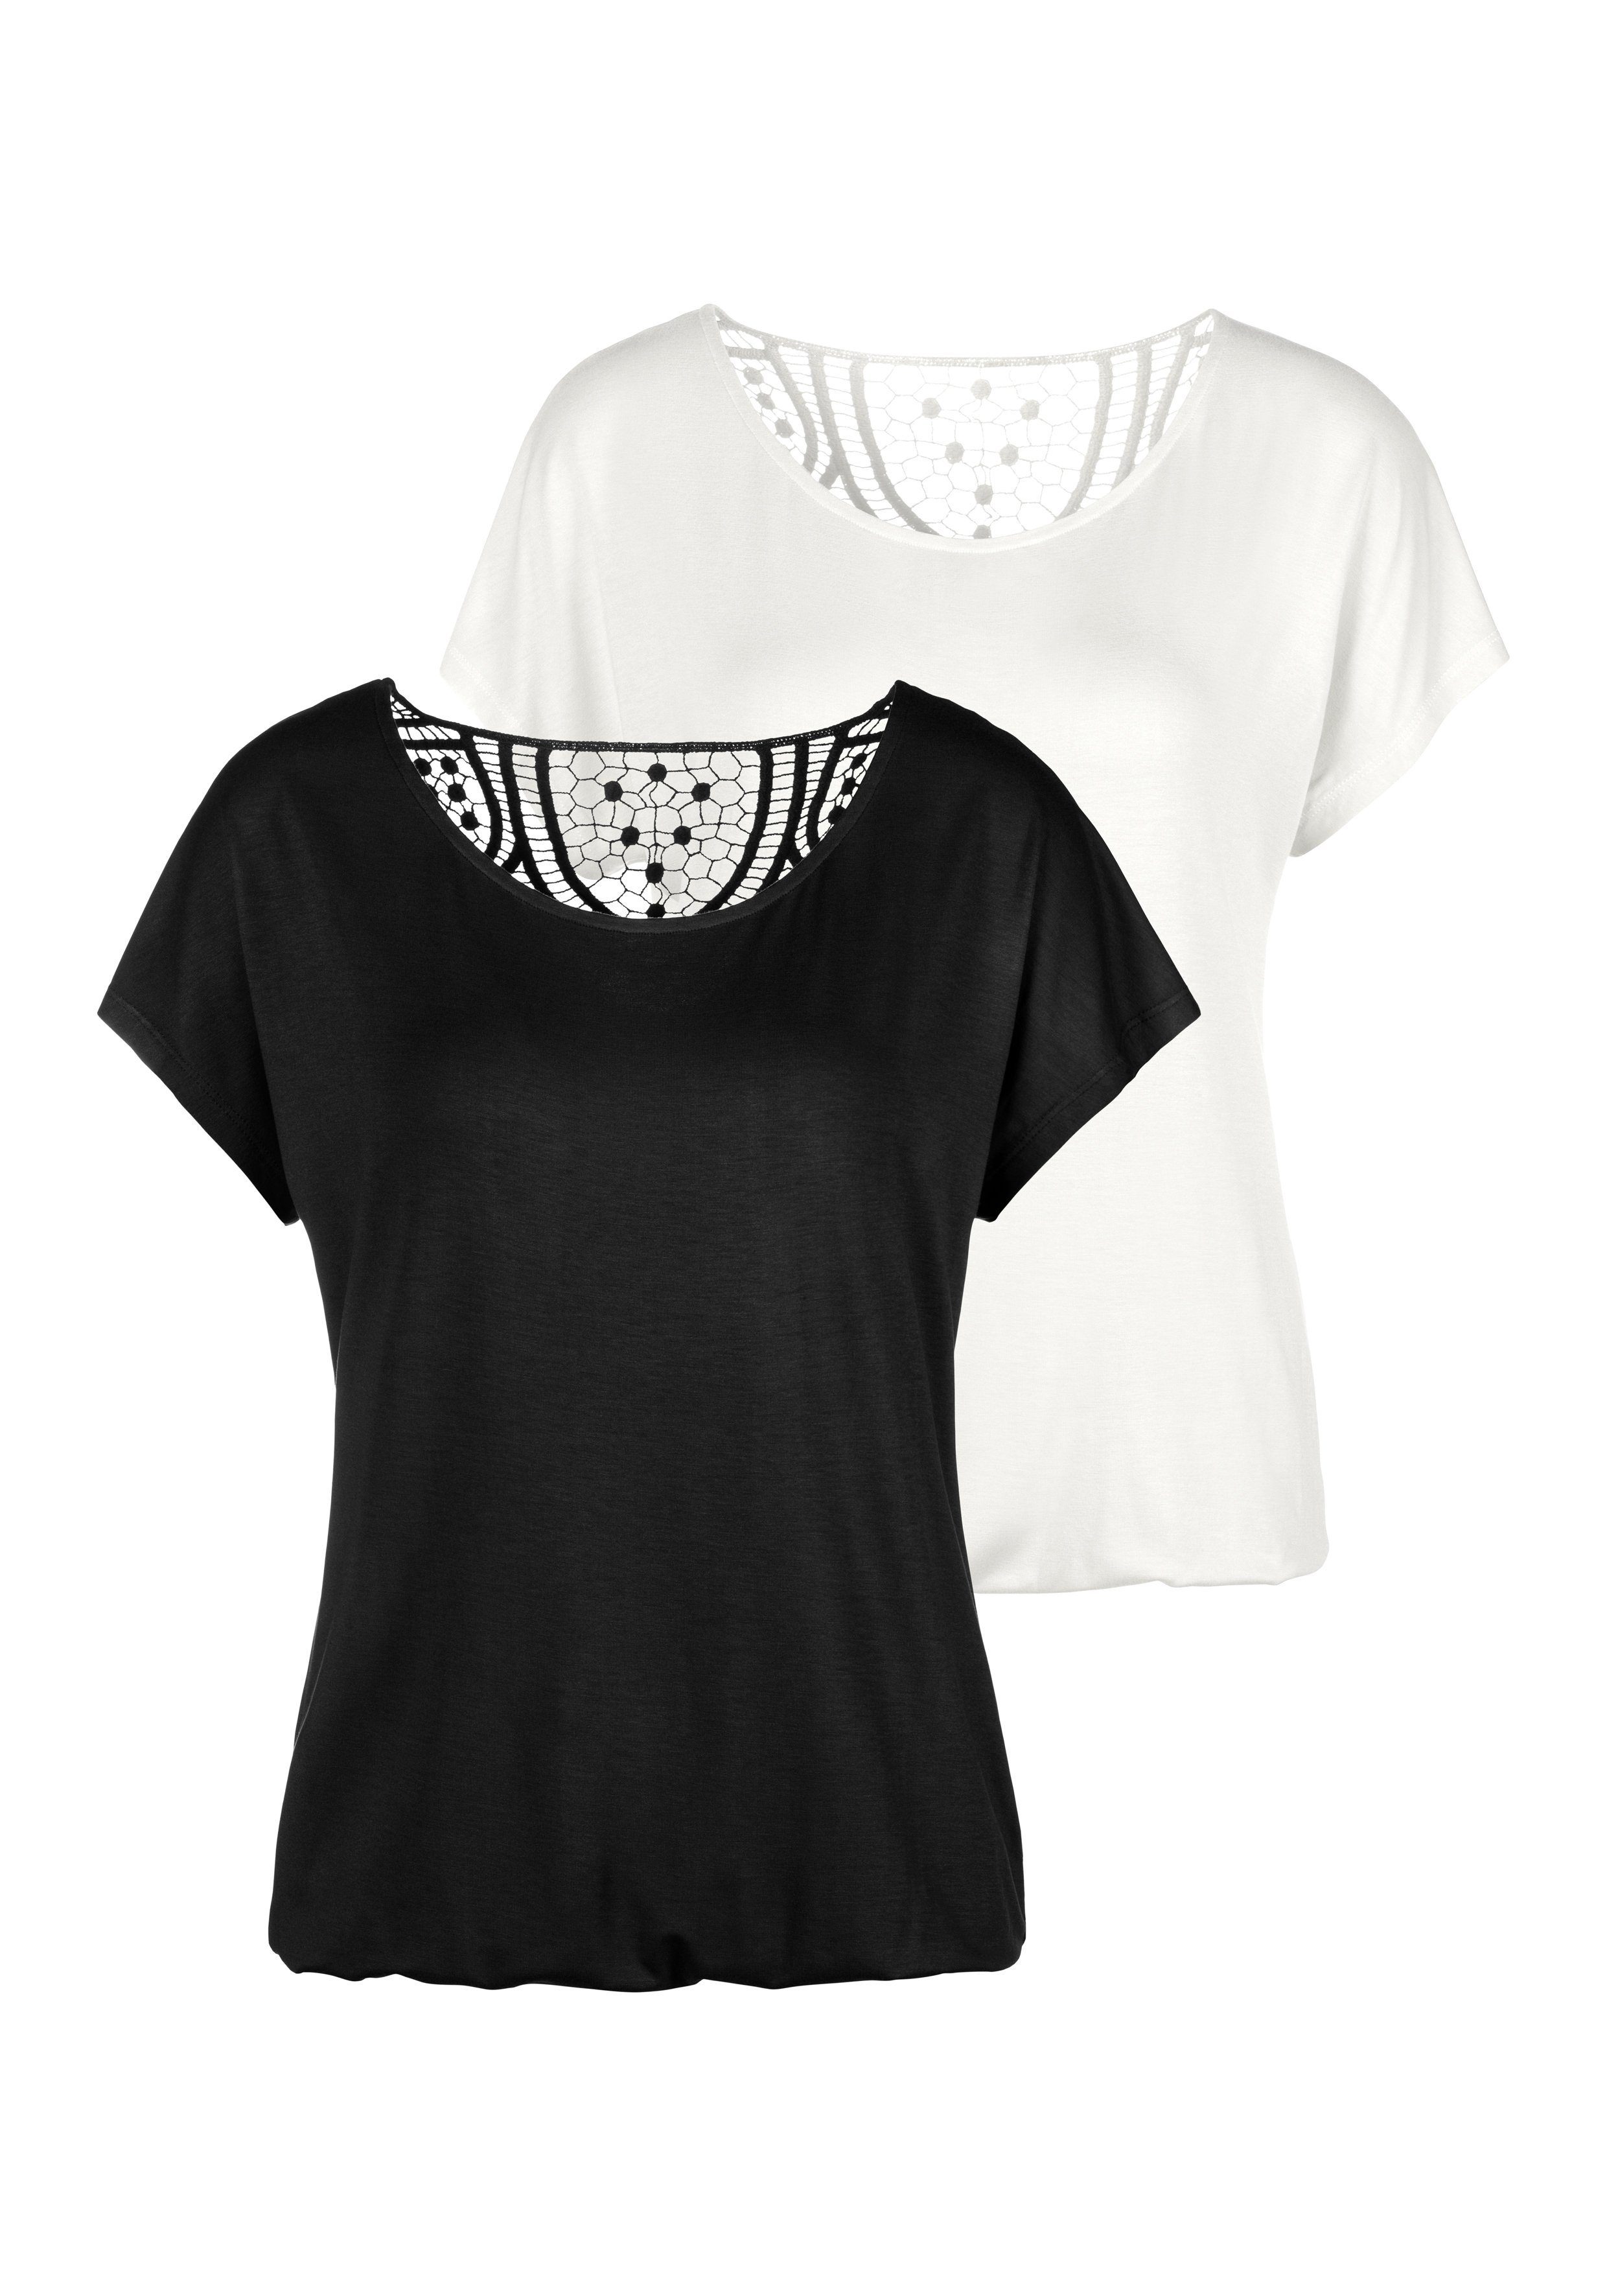 Schwarz-Weiße Shirts online kaufen | OTTO